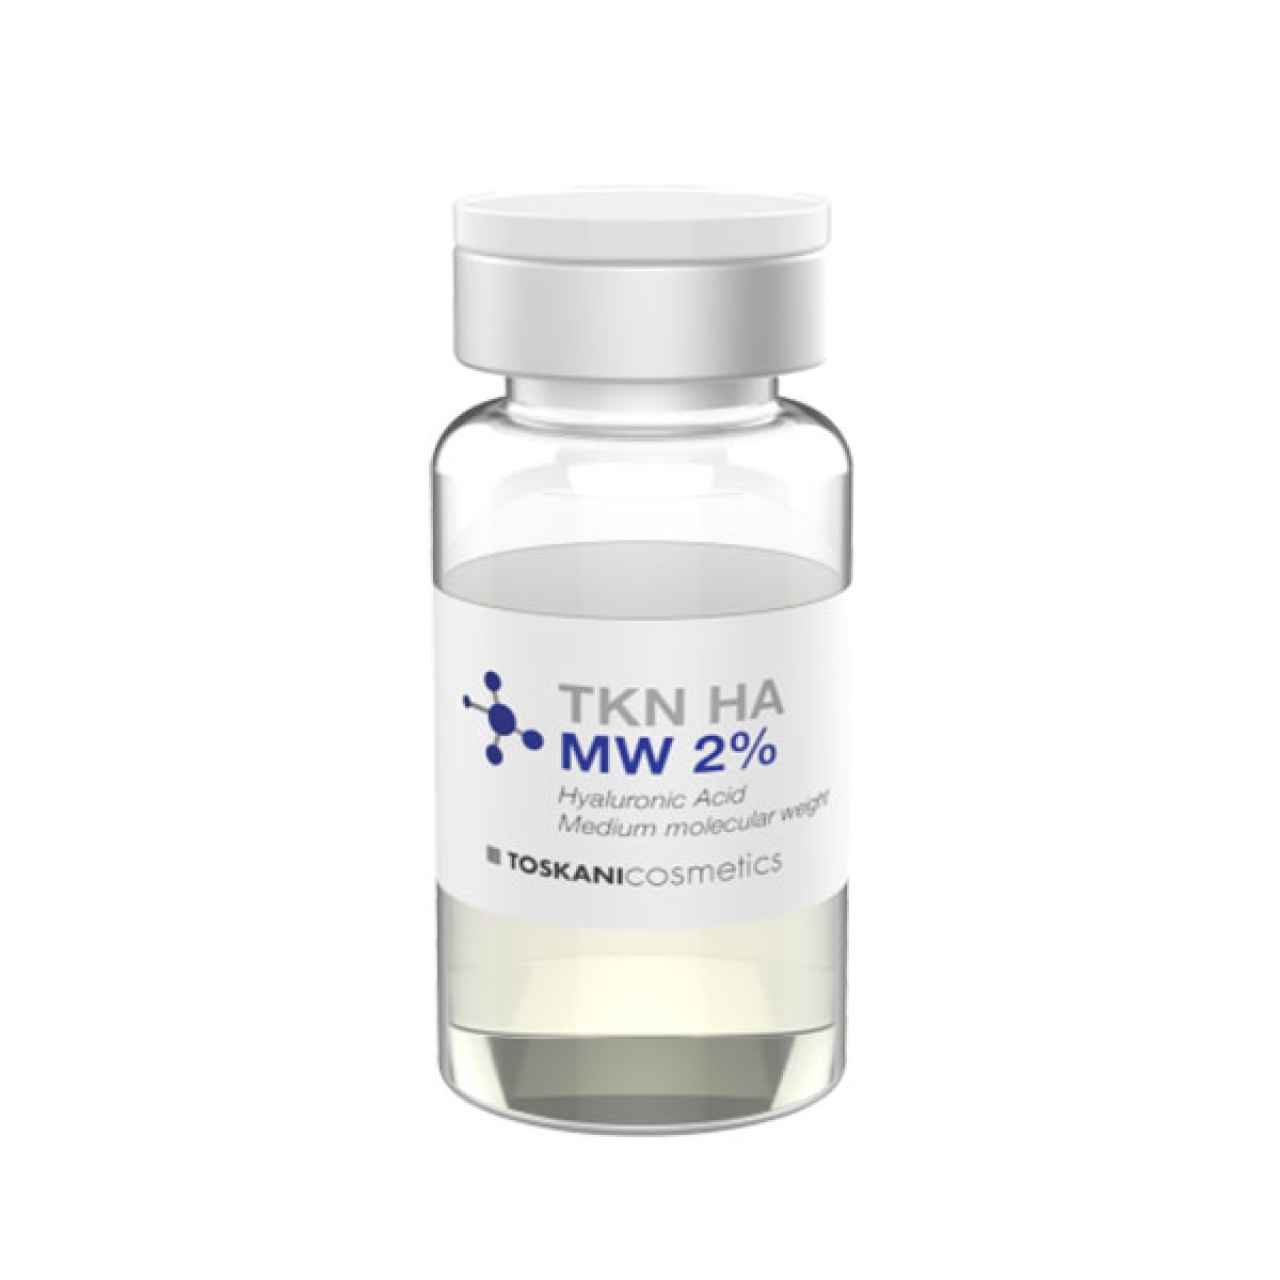 کوکتل توسکانی جوانساز هیالورنیک اسید TKN HA MW 2٪